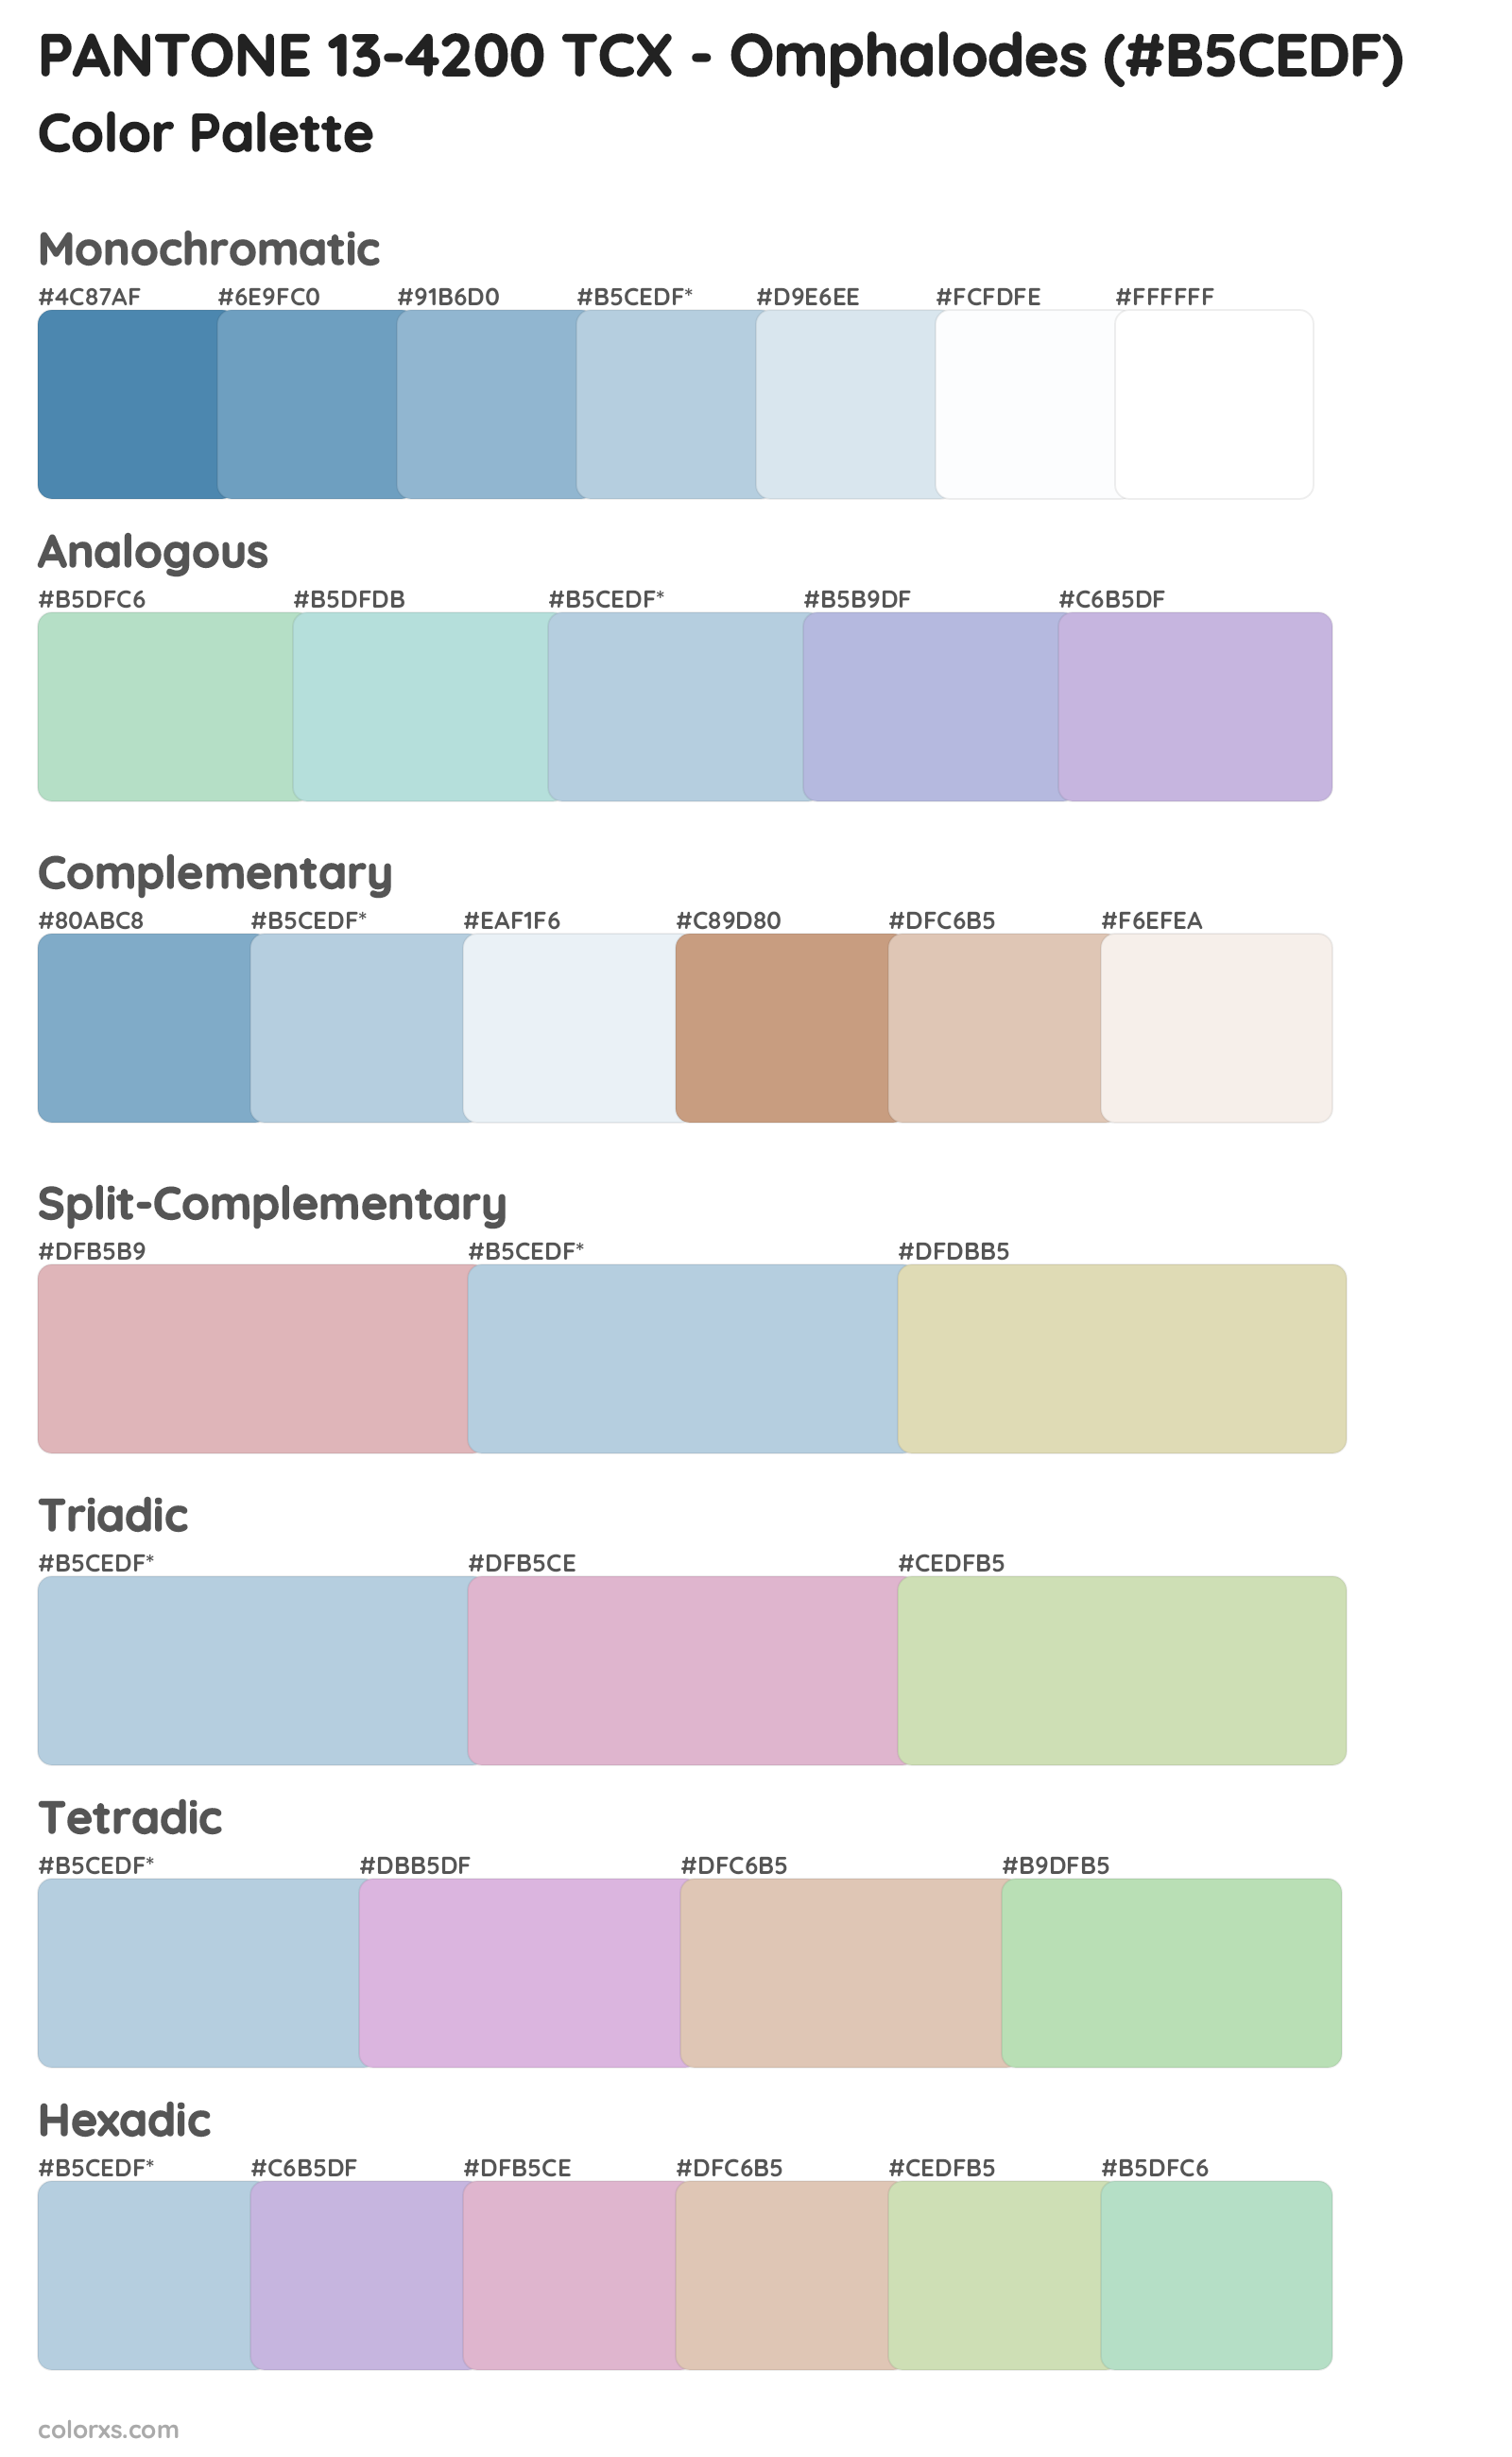 PANTONE 13-4200 TCX - Omphalodes Color Scheme Palettes